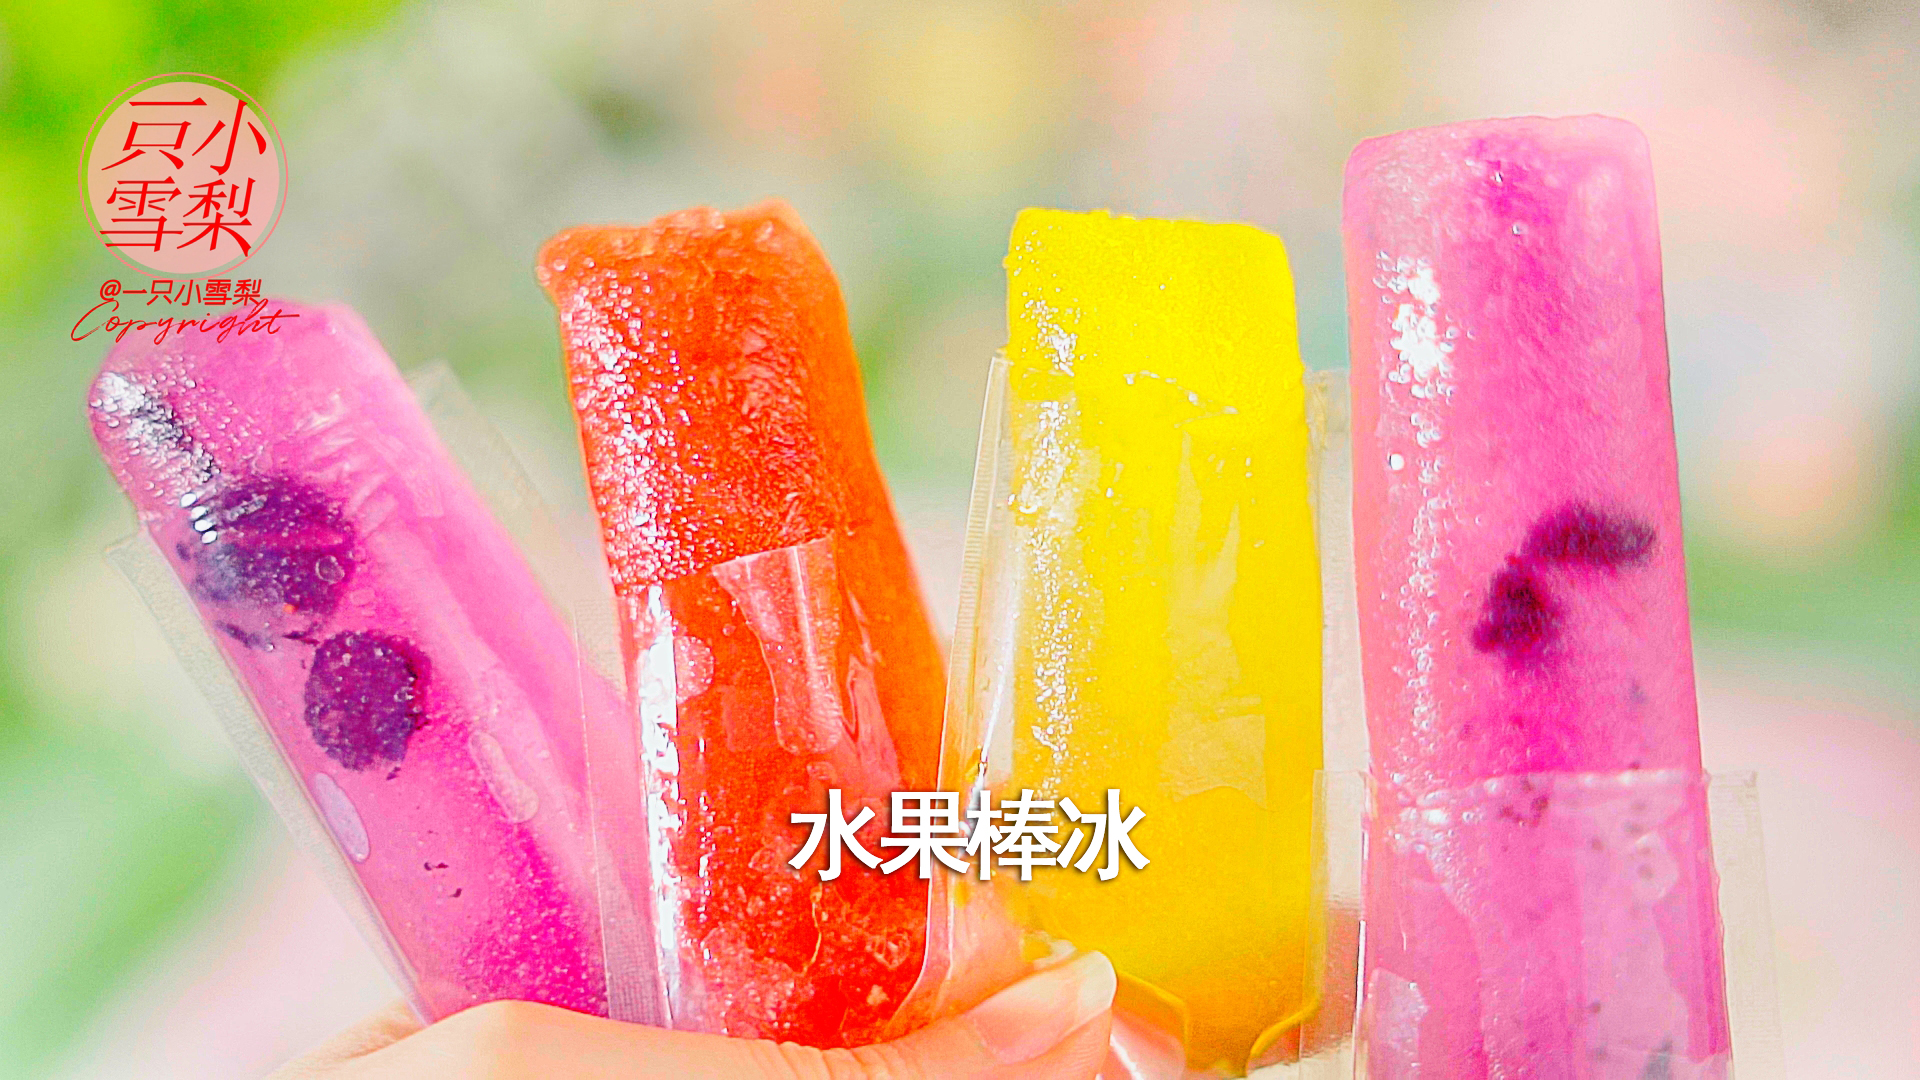 夏日必备 低卡水果棒冰 水果冰棍 #浓情端午 粽粽有赏#的做法